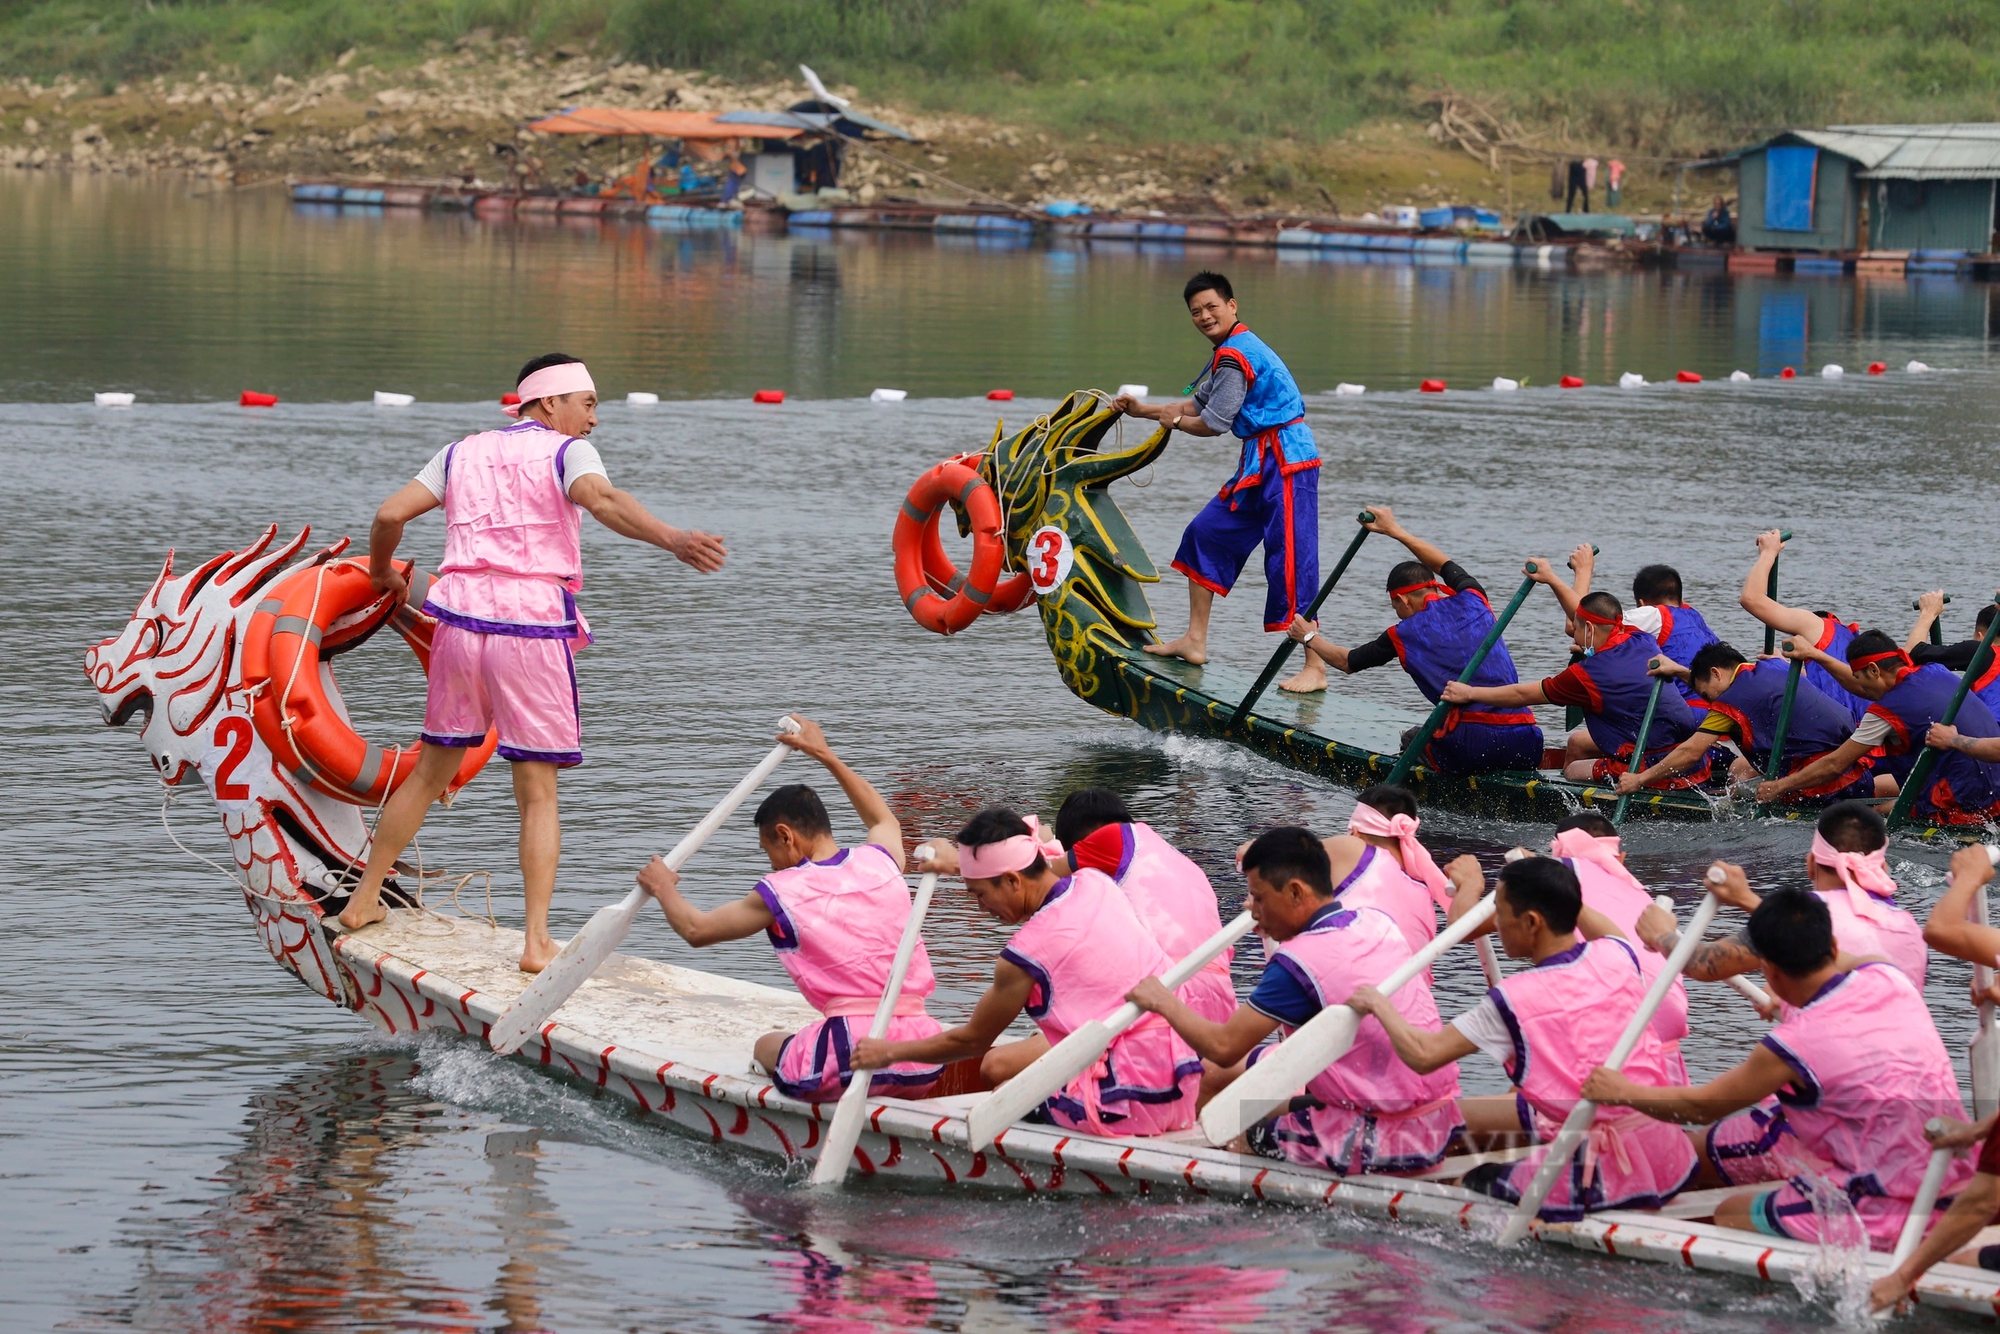 450 tay chải miền sơn cước gồng mình đua thuyền rồng trên sông Lô ở Tuyên Quang- Ảnh 3.